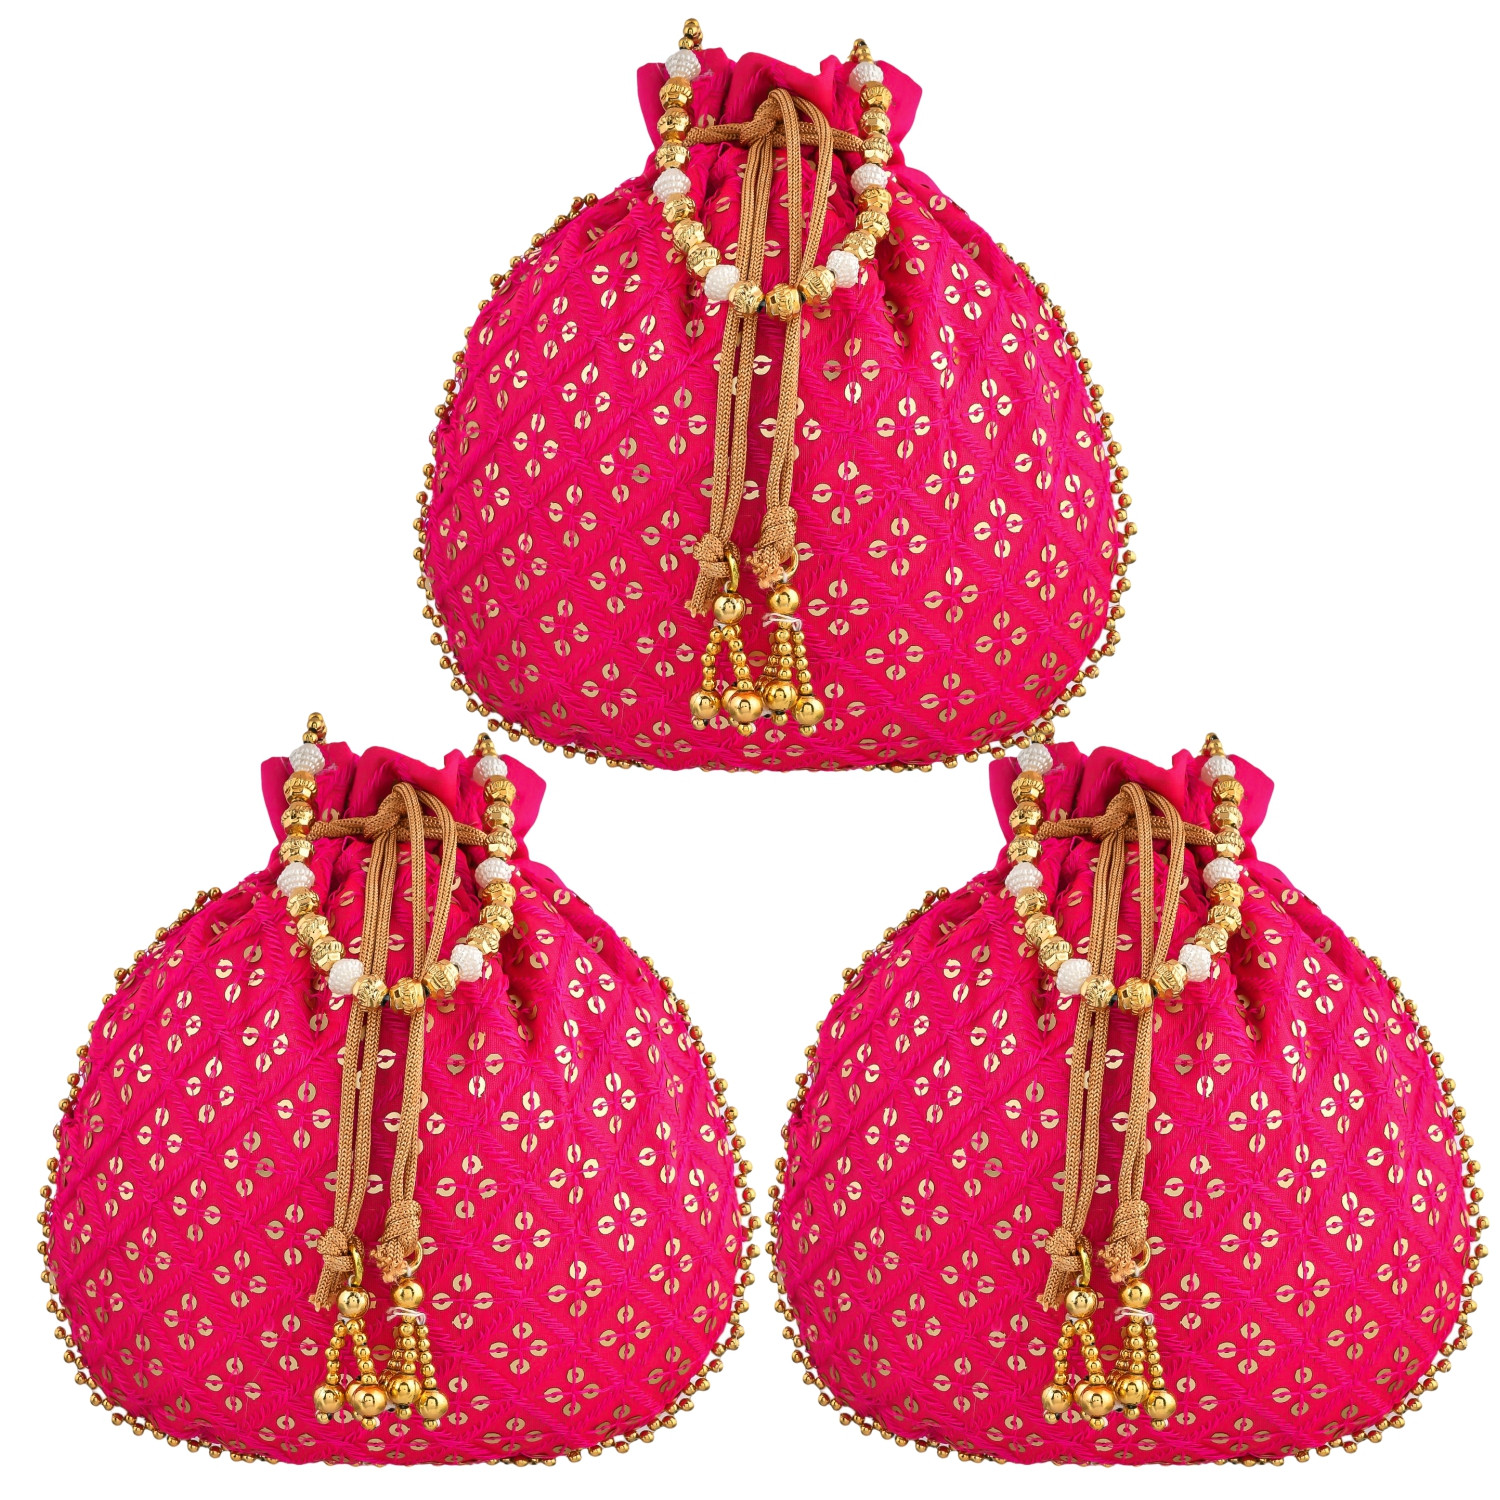 Kuber Industries Potli | Silk Wedding Potli | Drawstring Closure Potli | Wallet Potli | Christmas Gift Potli | Baby Shower Potli | Traditional Shagun Potli | Single Side Sequins-Potli | Rani